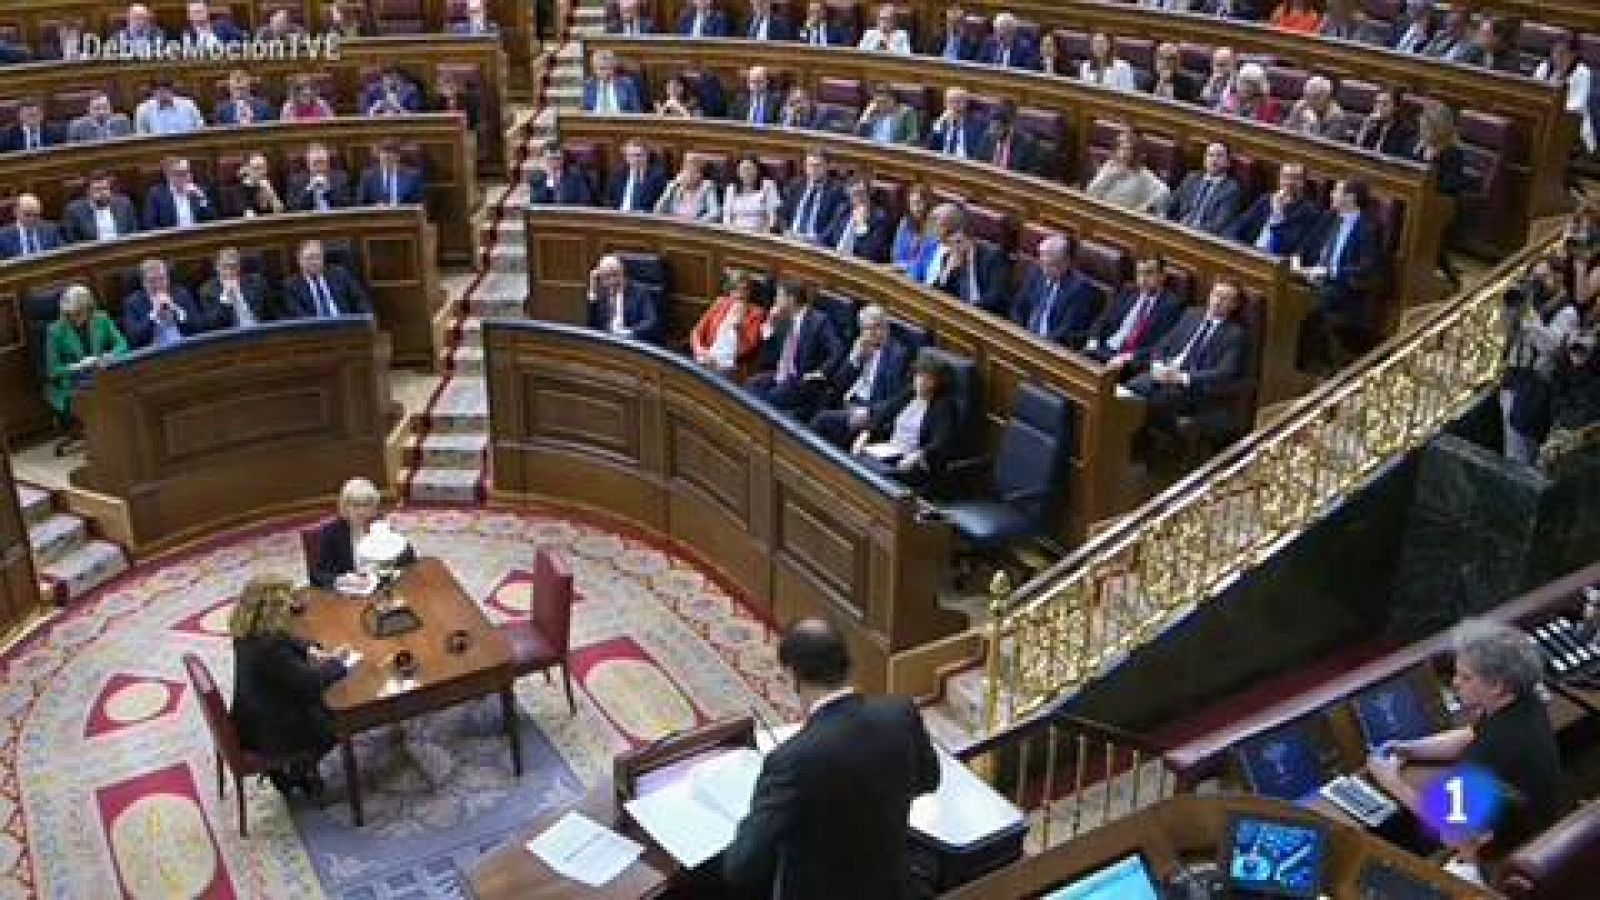 Moción de censura: primera intervención de Rajoy para responder a Ábalos